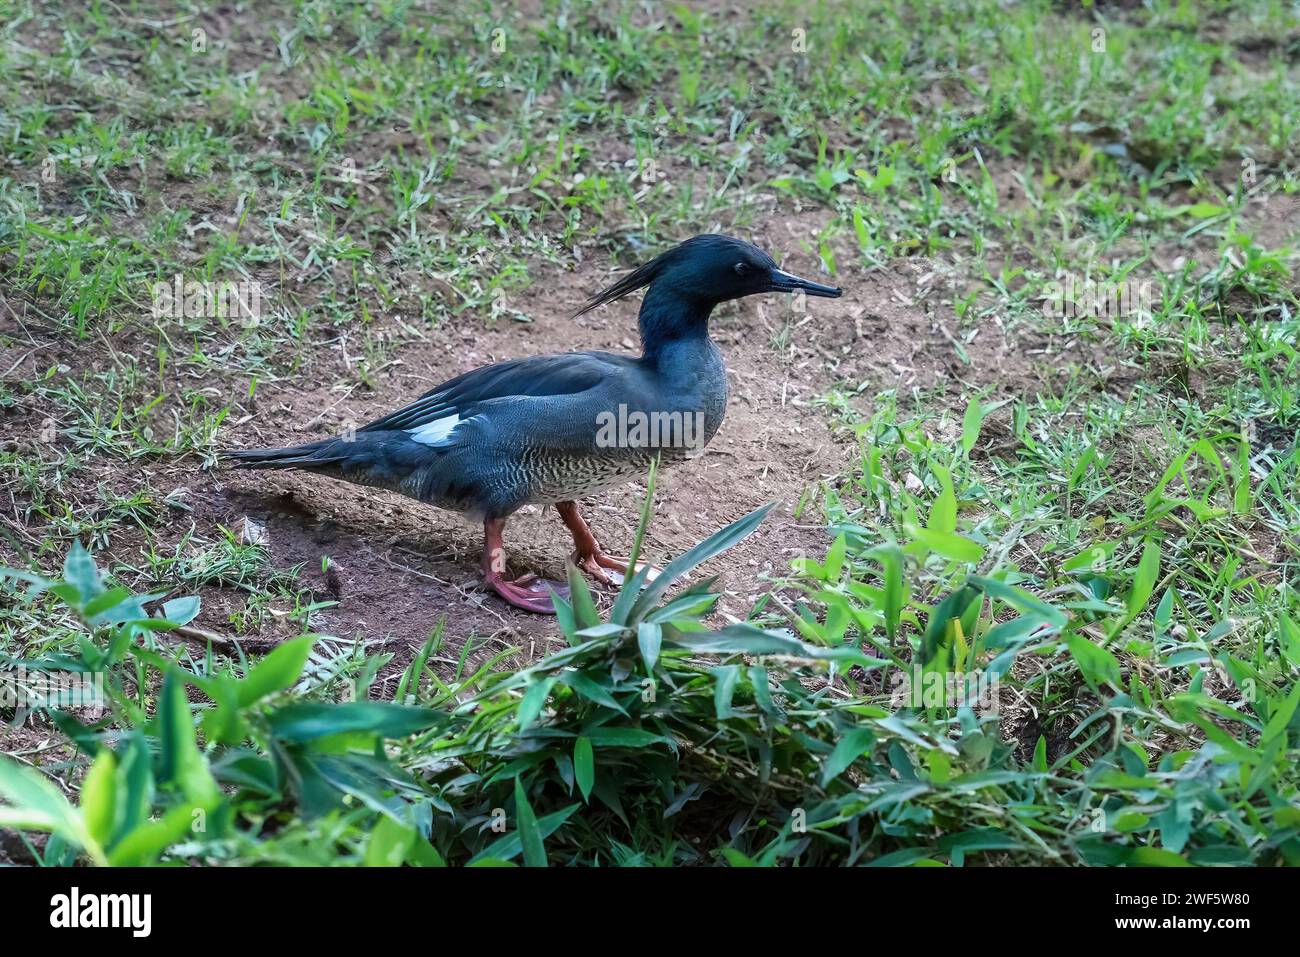 Brasilianischer Merganser (Mergus octosetaceus) - Wasservögel Stockfoto